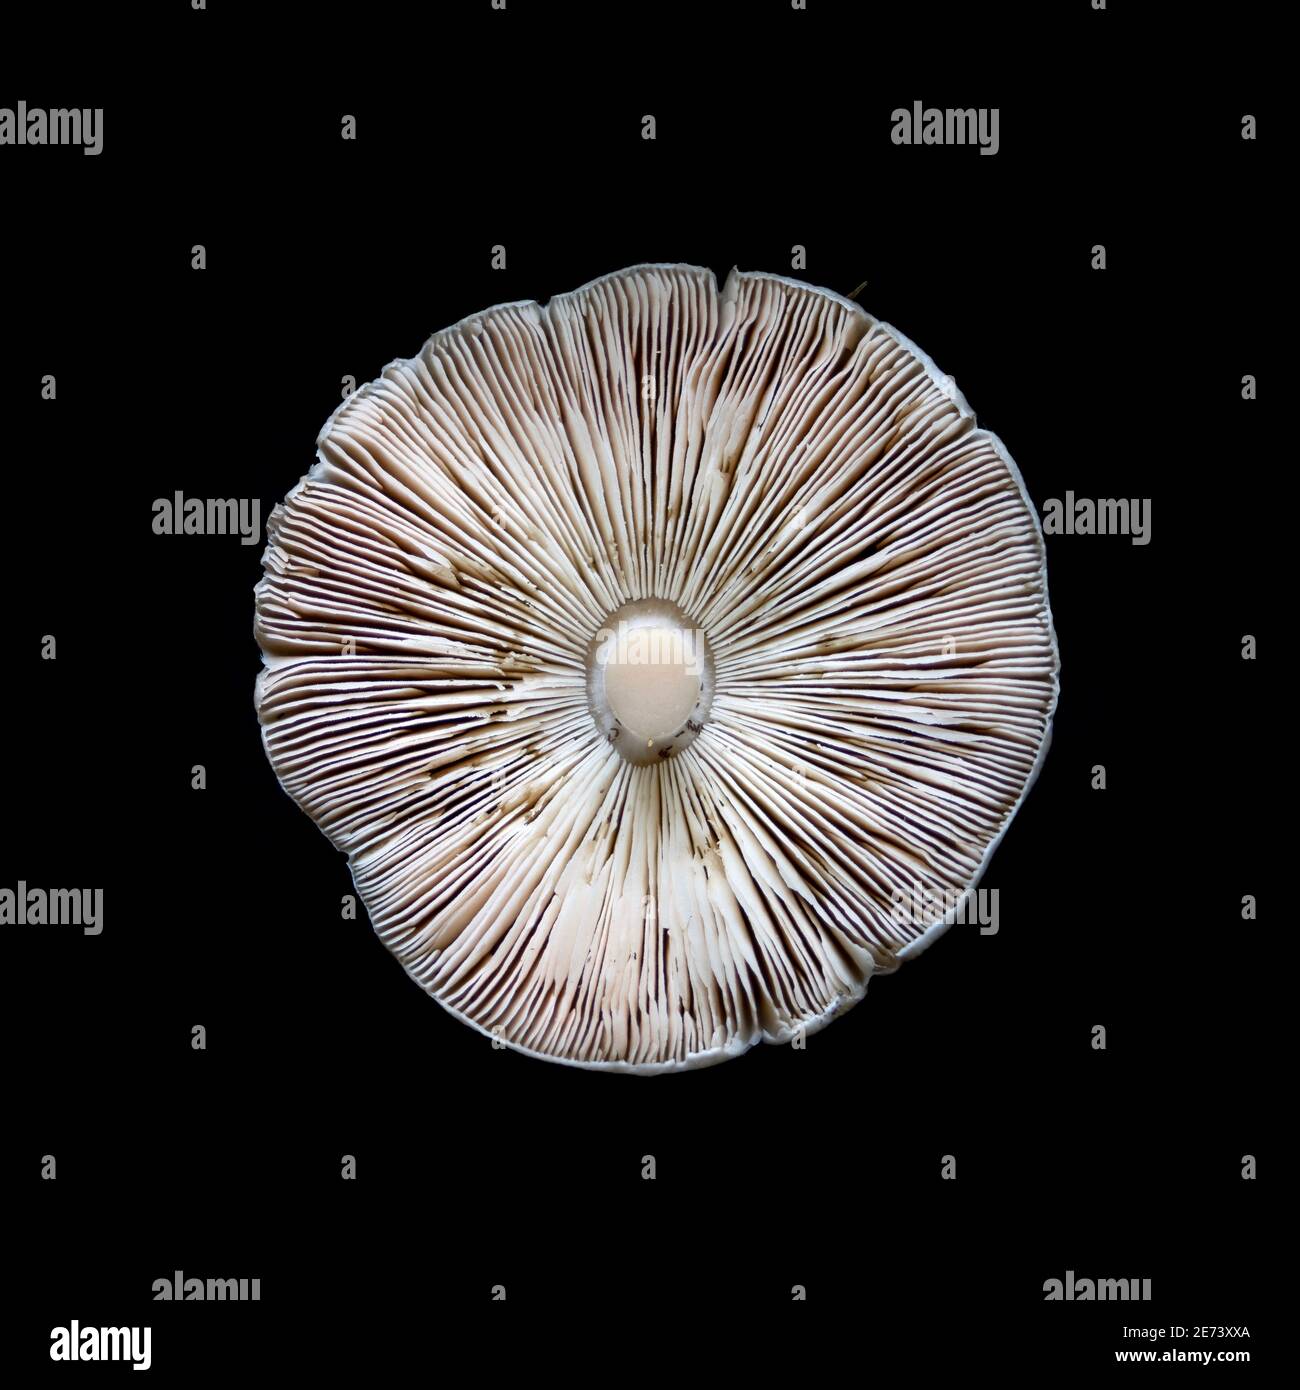 Stubble rosegill fungus (Volvopluteus gloiocephalus) Stock Photo